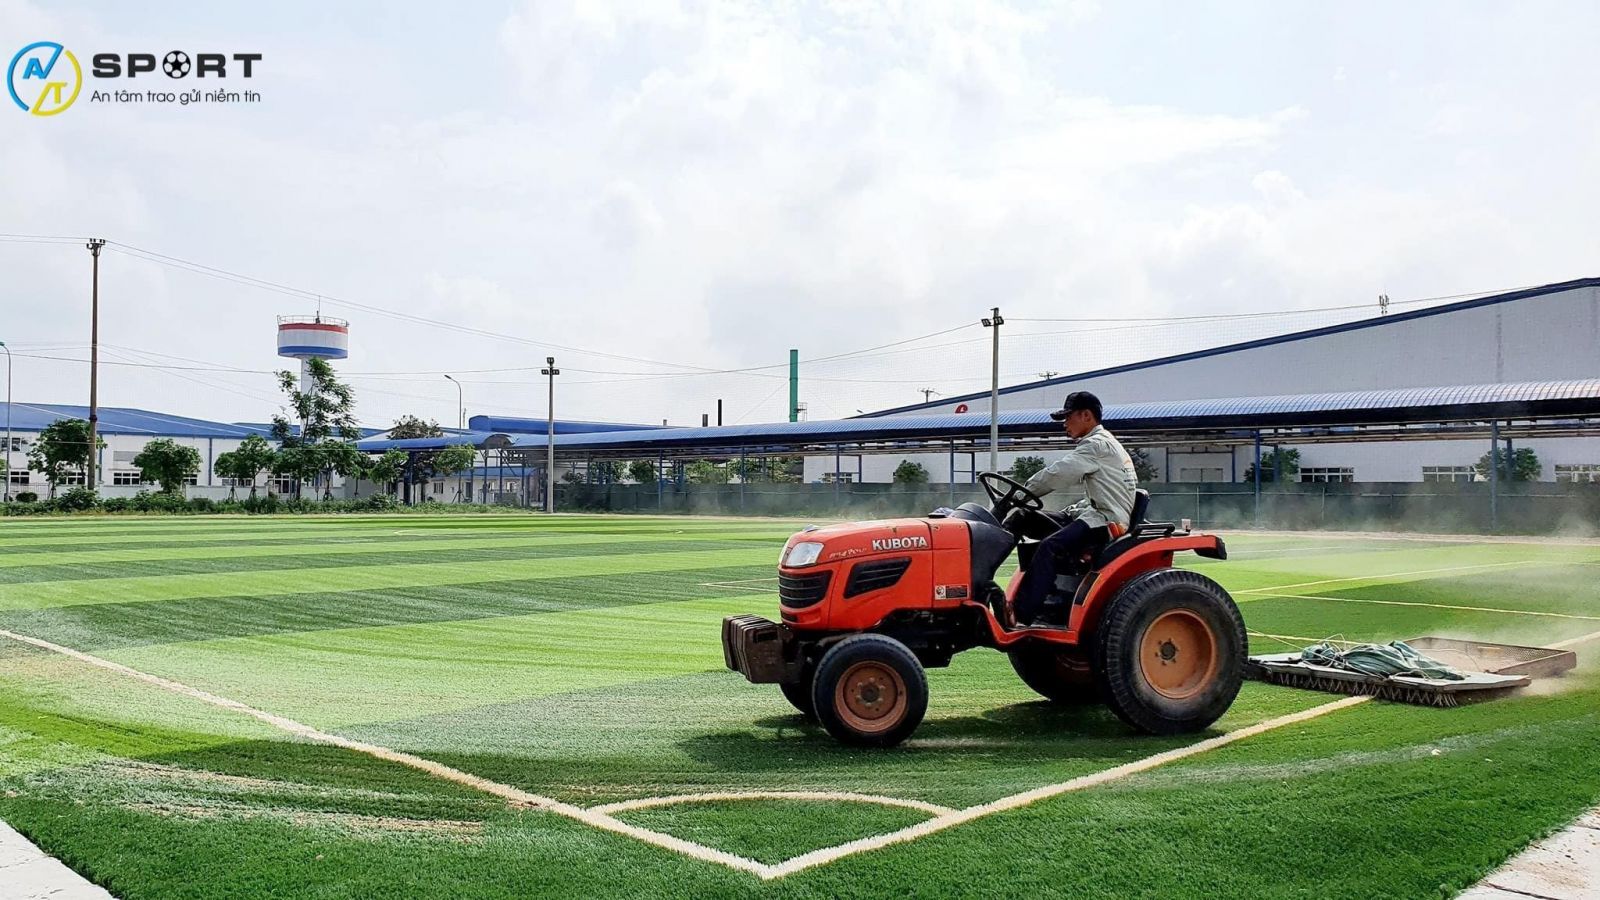 Thi công cỏ nhân tạo sân bóng tại Lào Cai